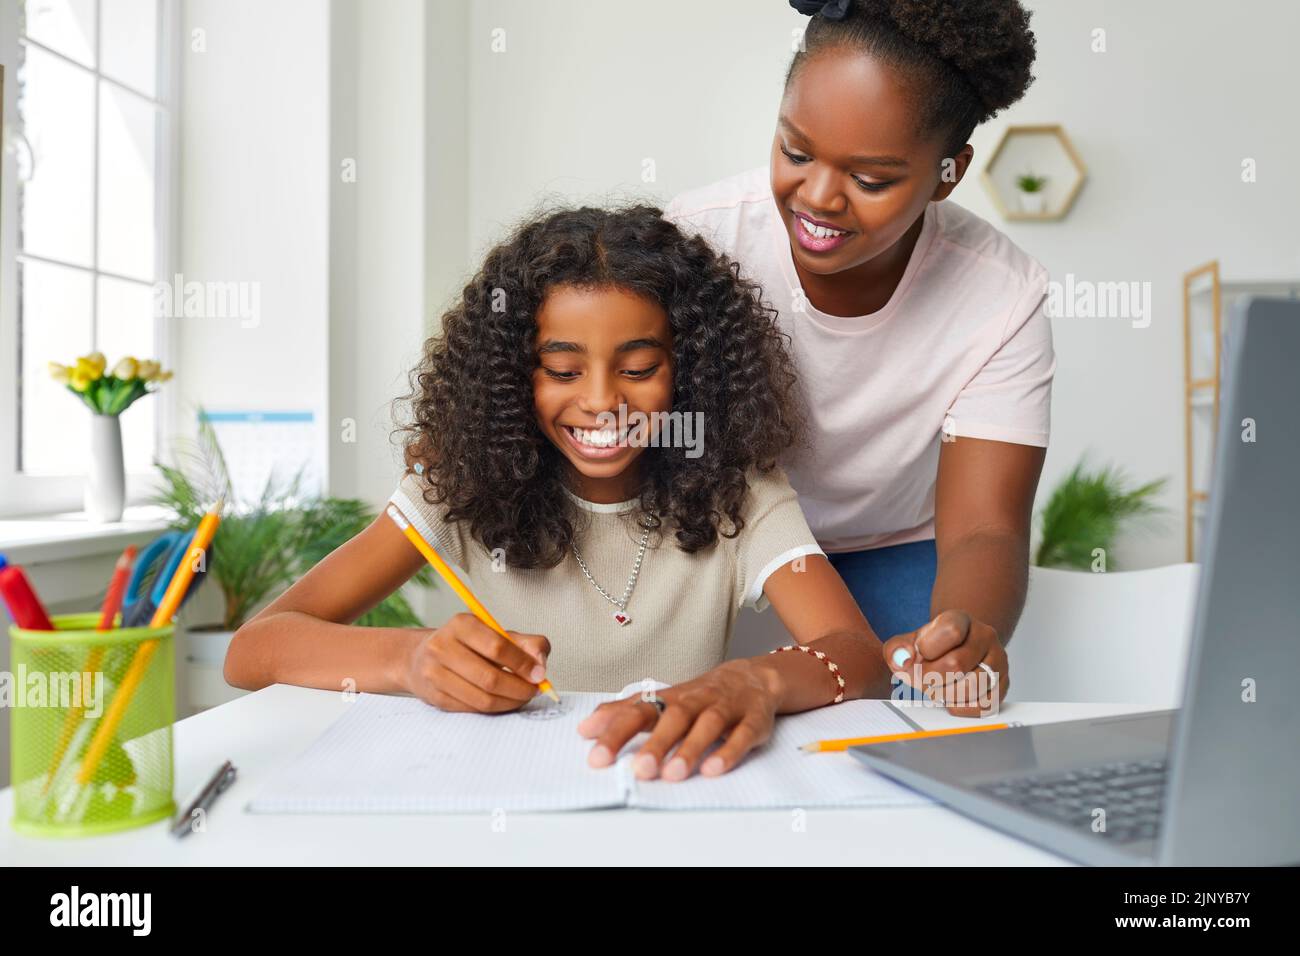 Adolescente afroamericana alegre haciendo la tarea escolar en casa con la ayuda de mamá. Foto de stock